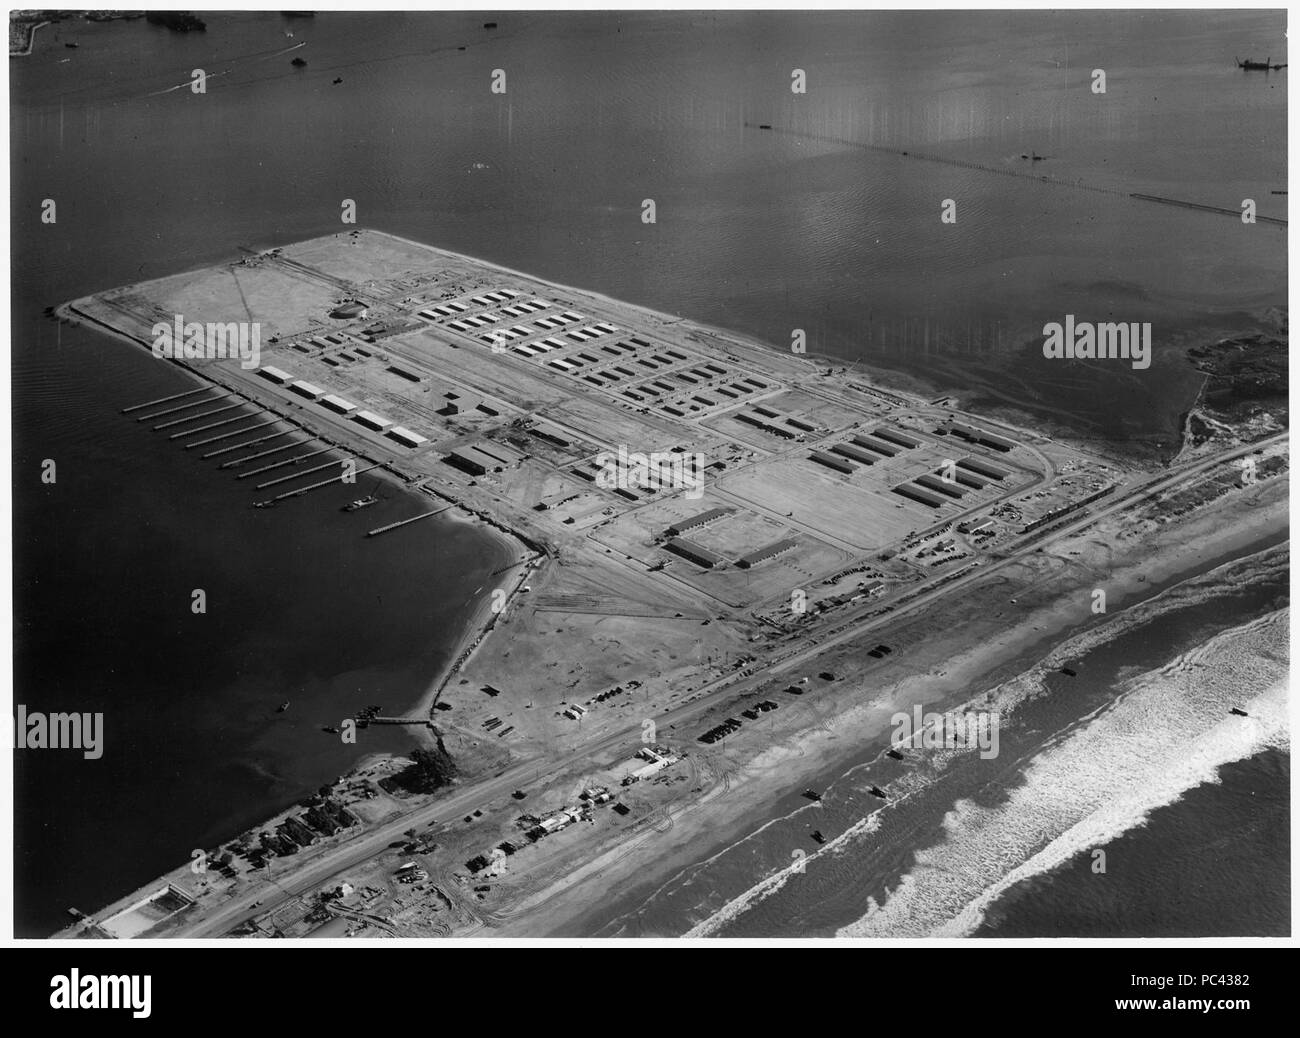 Vue aérienne de la base d'entraînement amphibie, San Diego, Californie. Altitude 700 mètres. - Banque D'Images